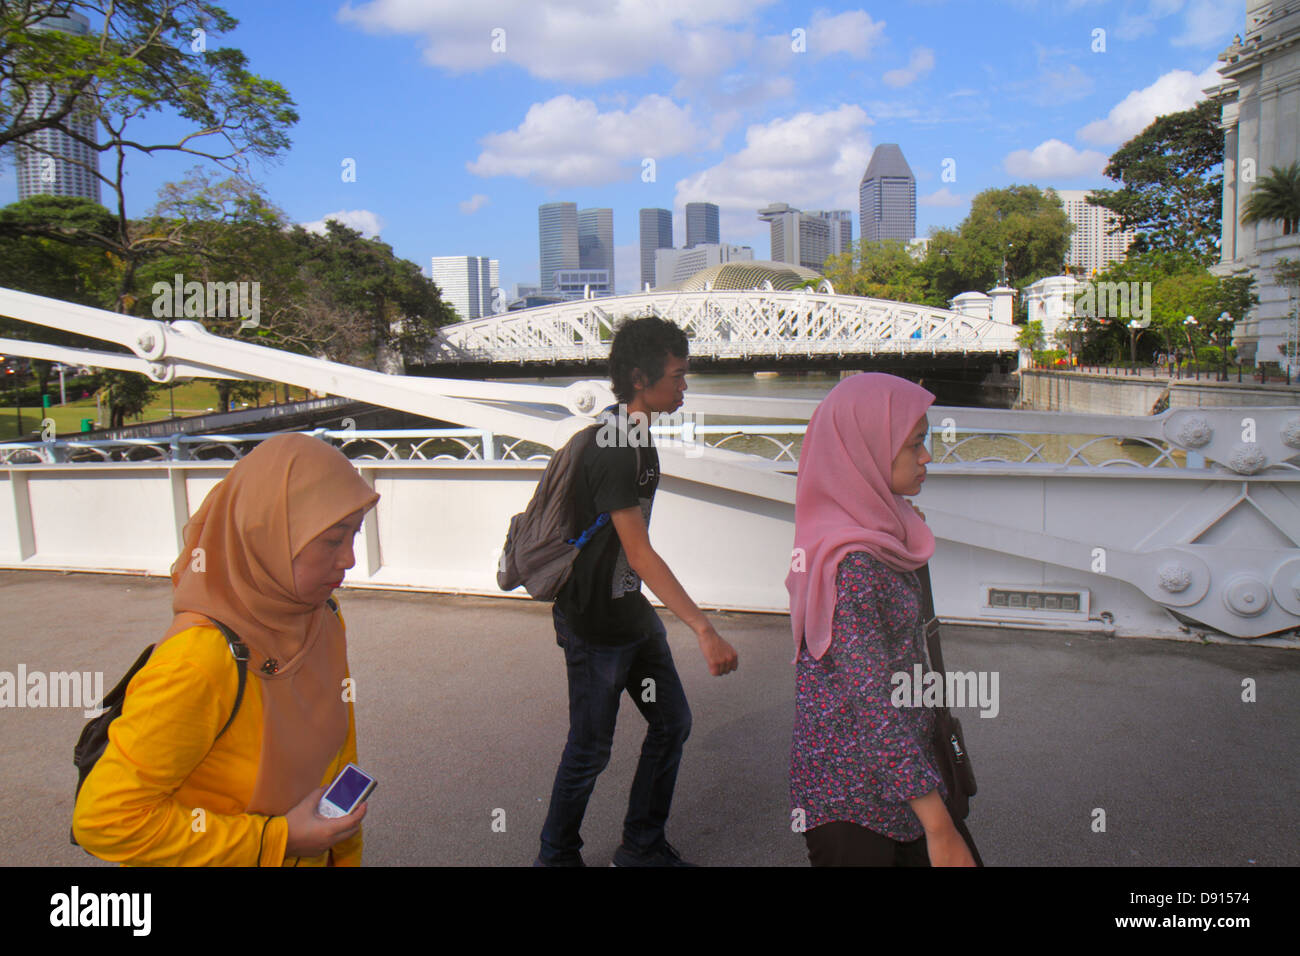 Singapore Singapore River, Boat Quay, Cavenagh Bridge, asiatischer Mann Männer männlich, Frau weibliche Frauen, Muslim, Hijab, Sing130201162 Stockfoto